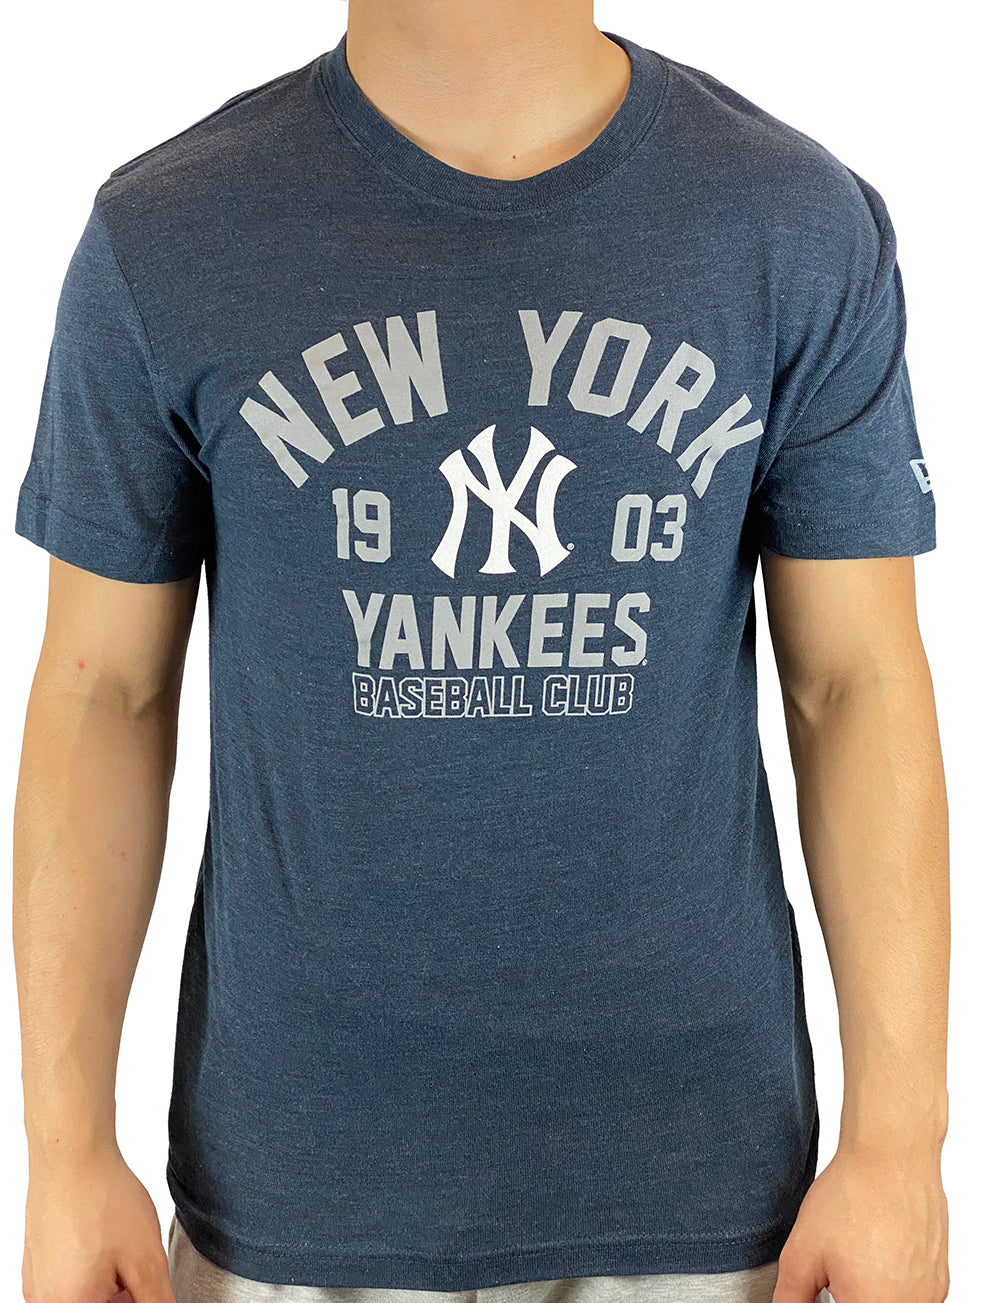 Fanatics Mens MLB New York Yankees Home Stretch Tee T-Shirt S/S Baseball NY